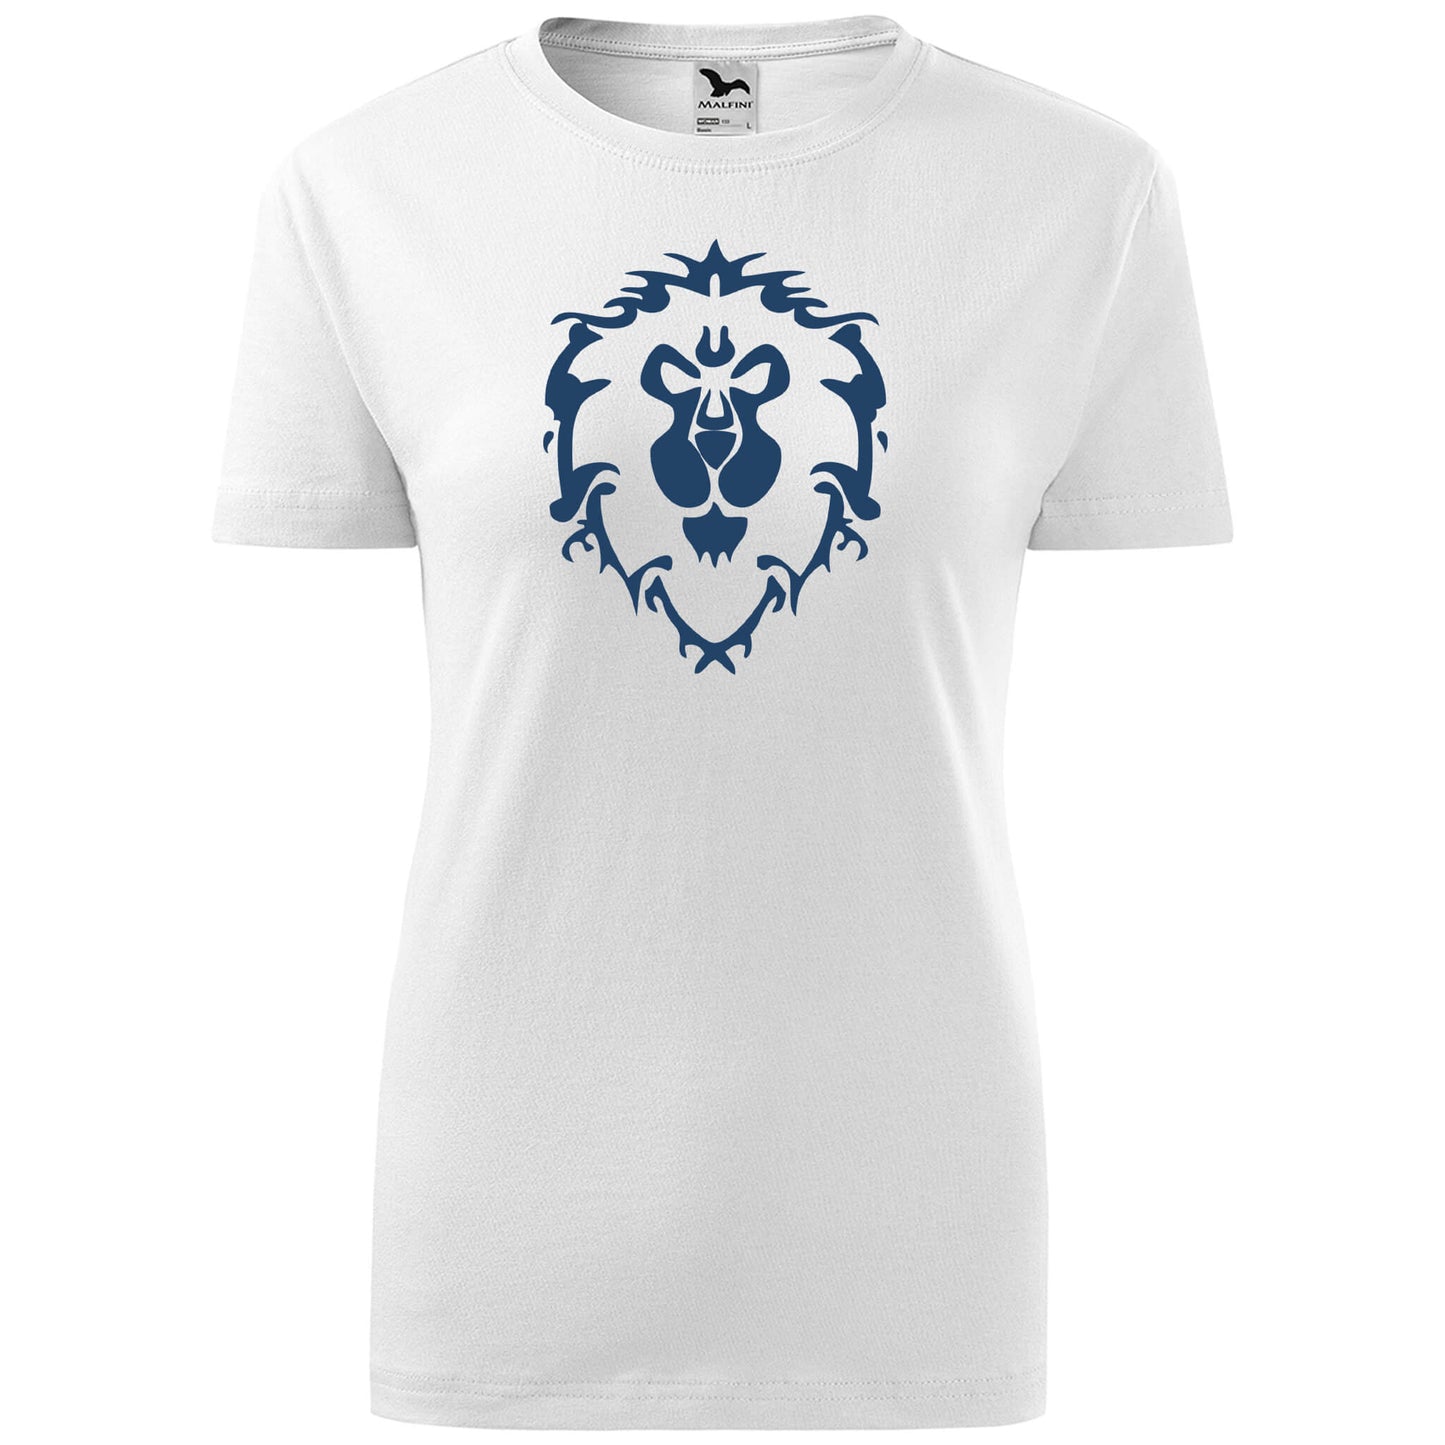 T-shirt - Alliance - World of Warcraft - rvdesignprint